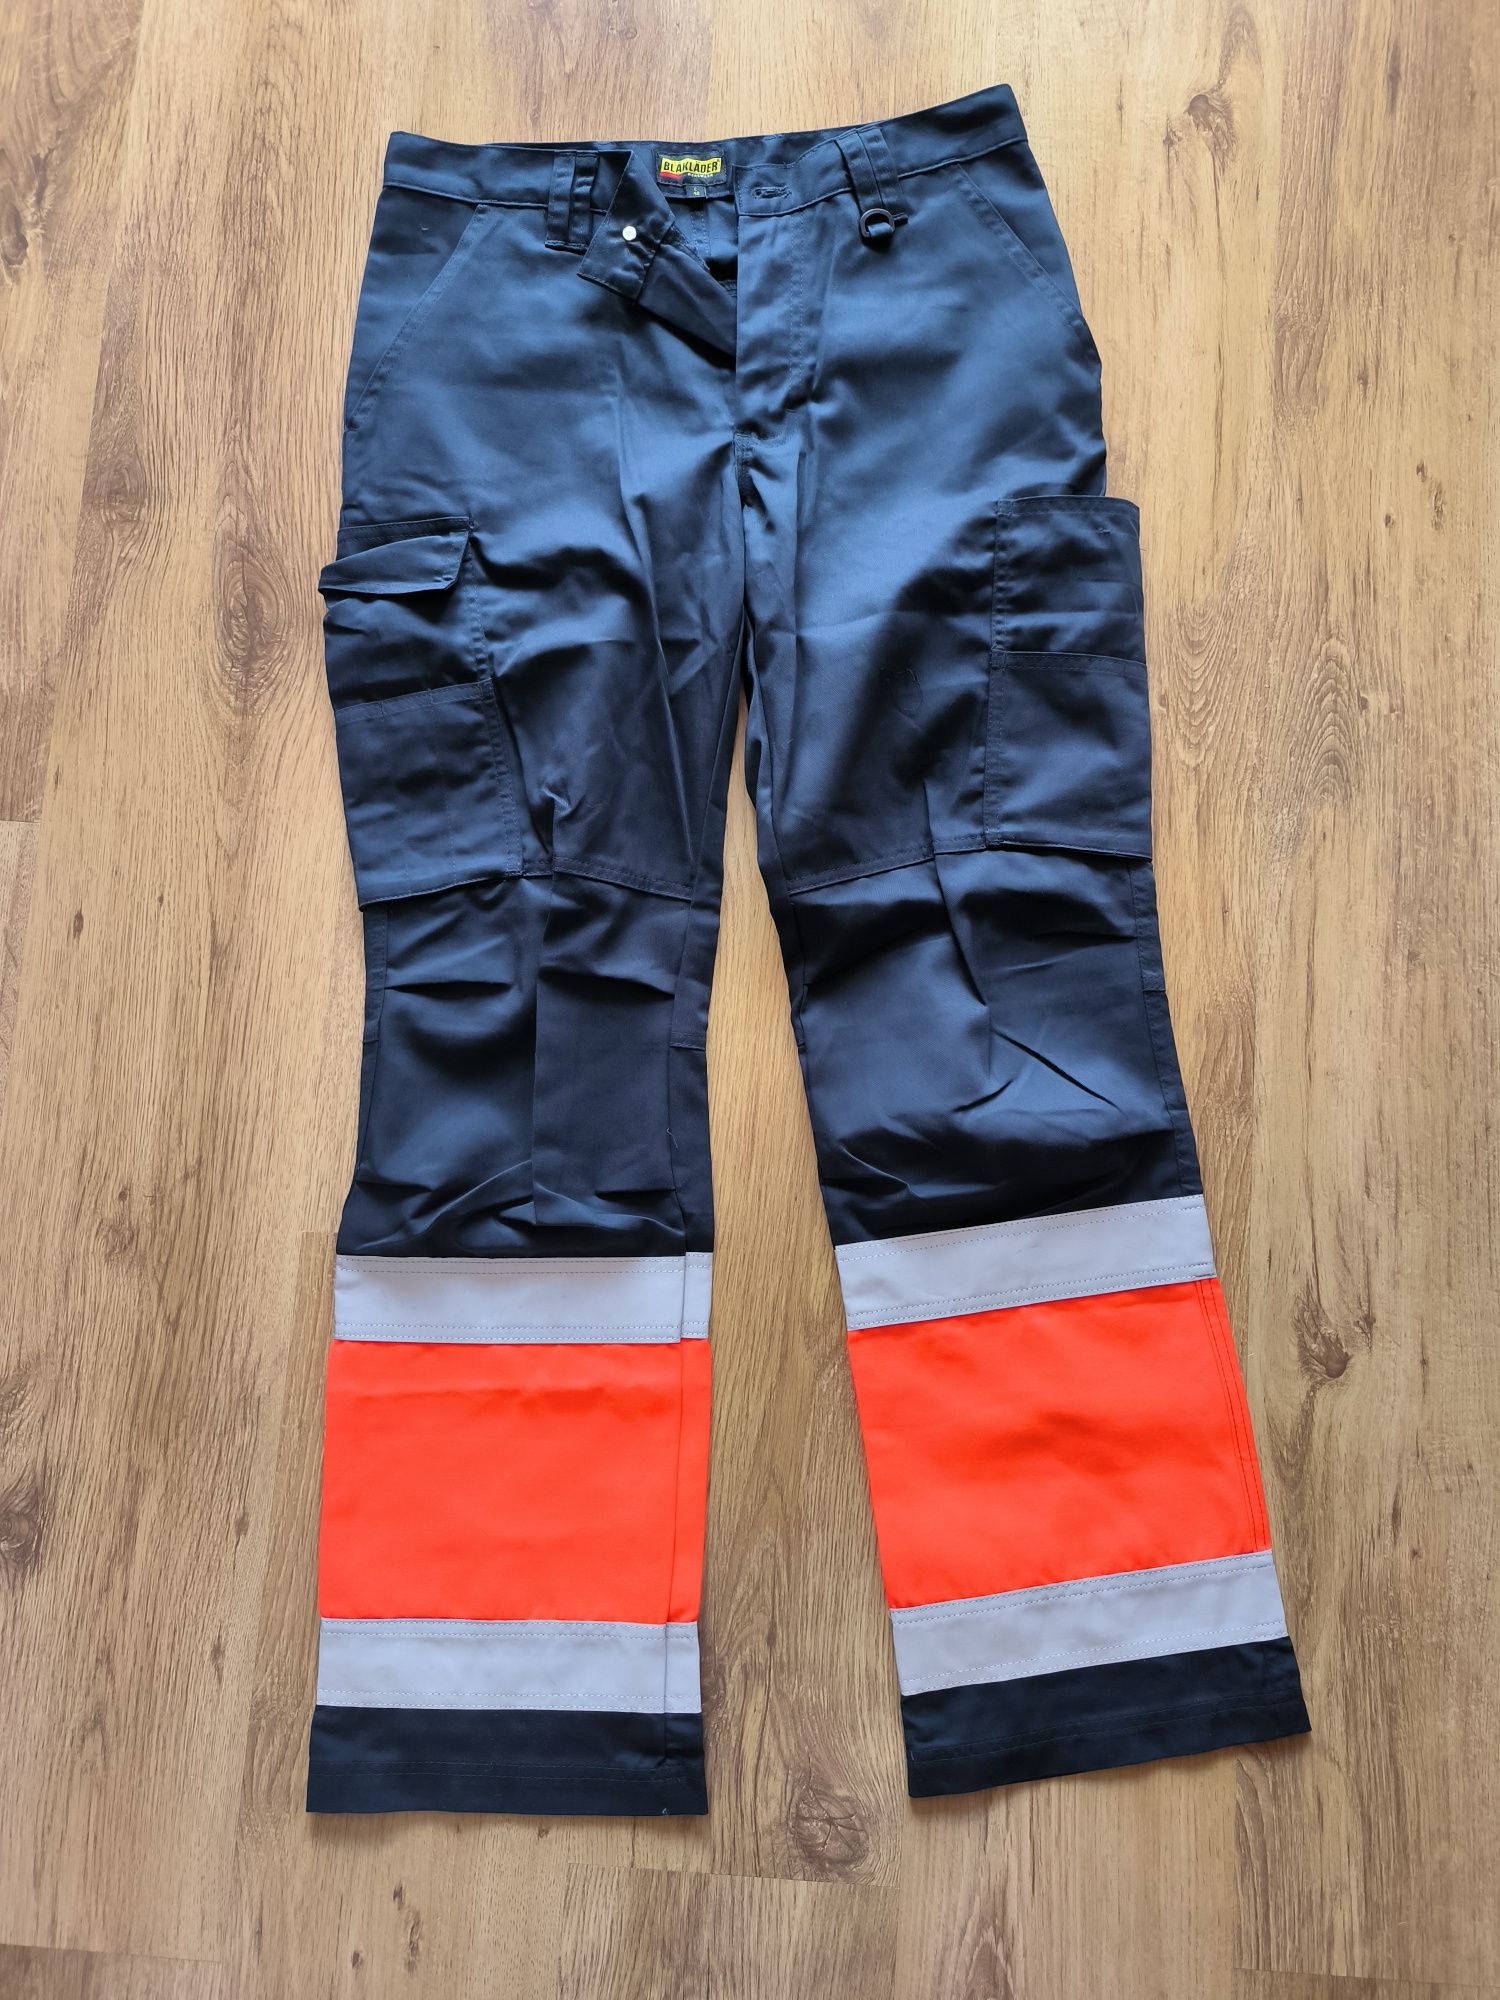 Spodnie robocze firmy Blaklader